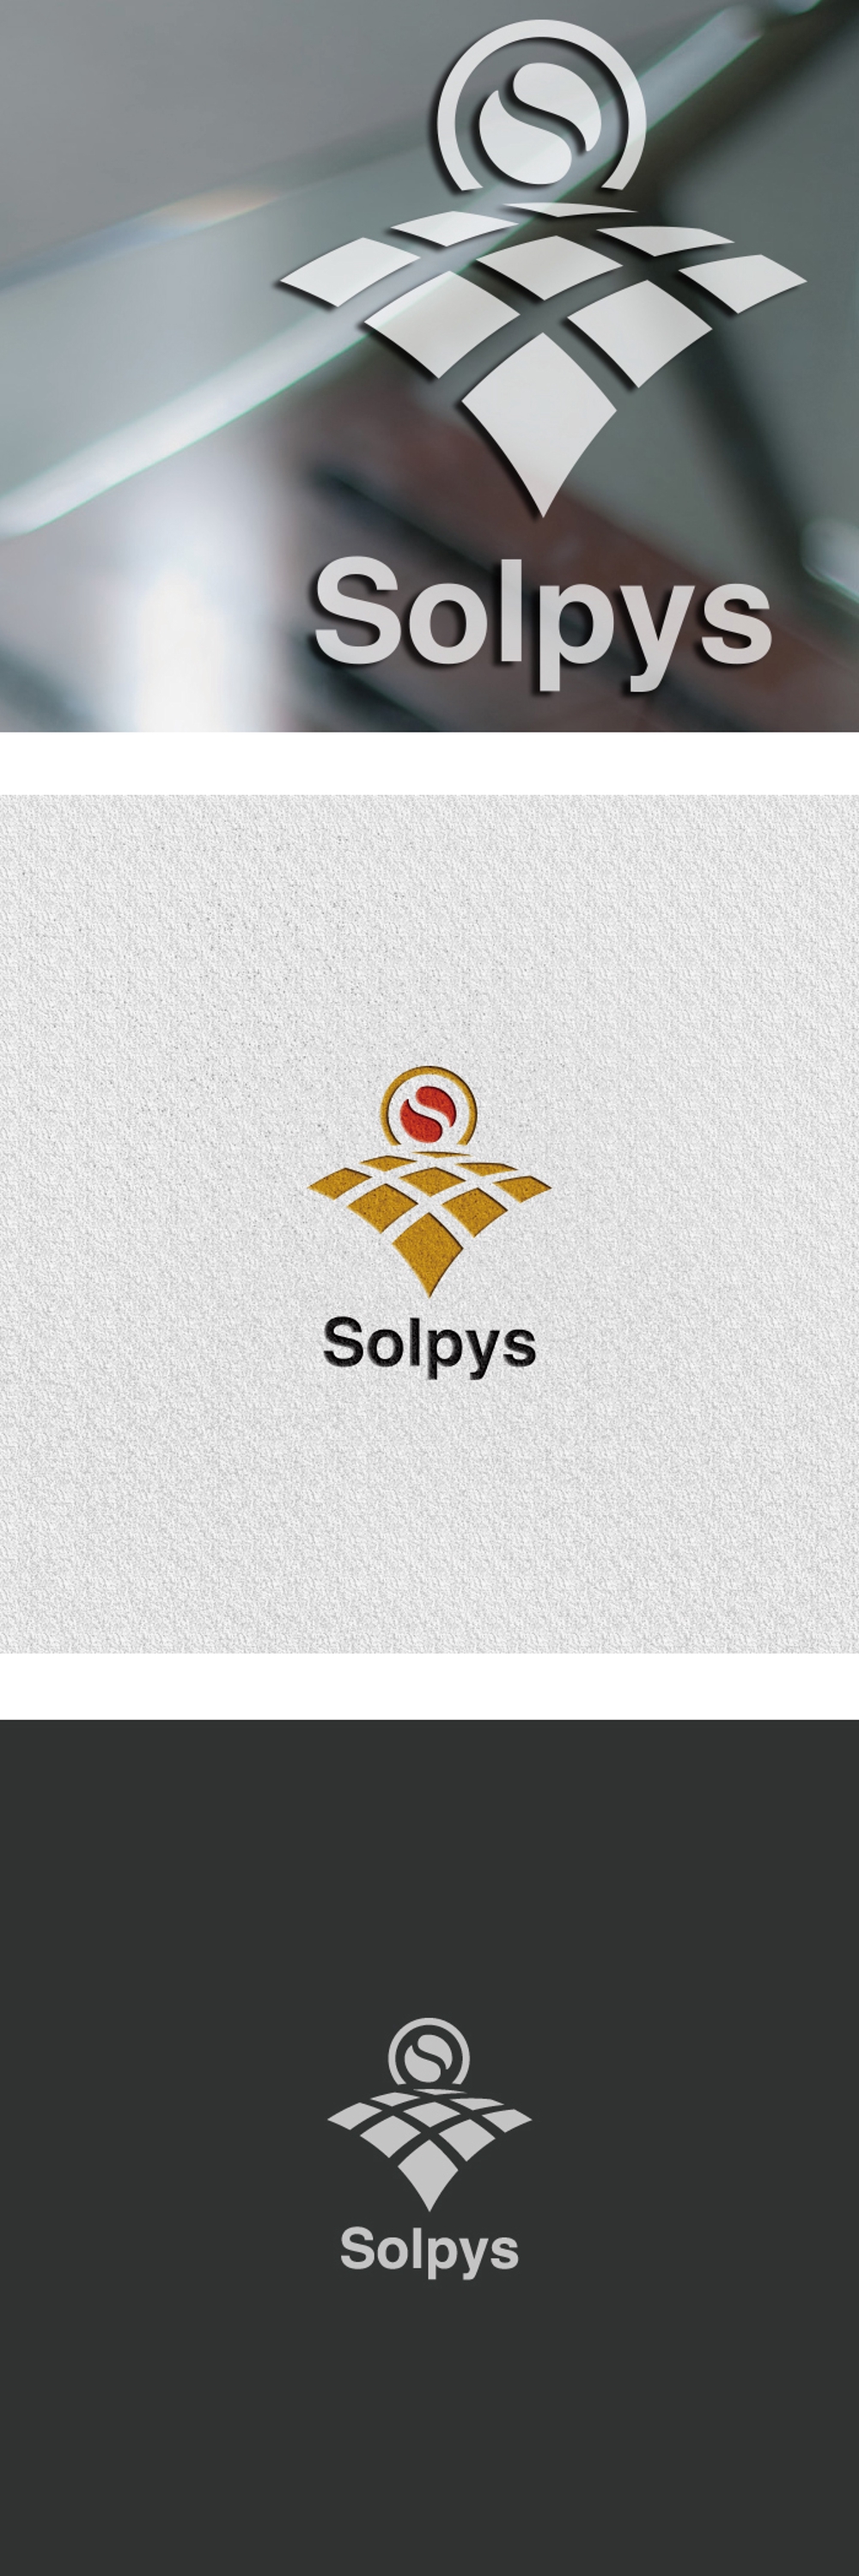 太陽光発電事業会社「Solpys」のロゴ